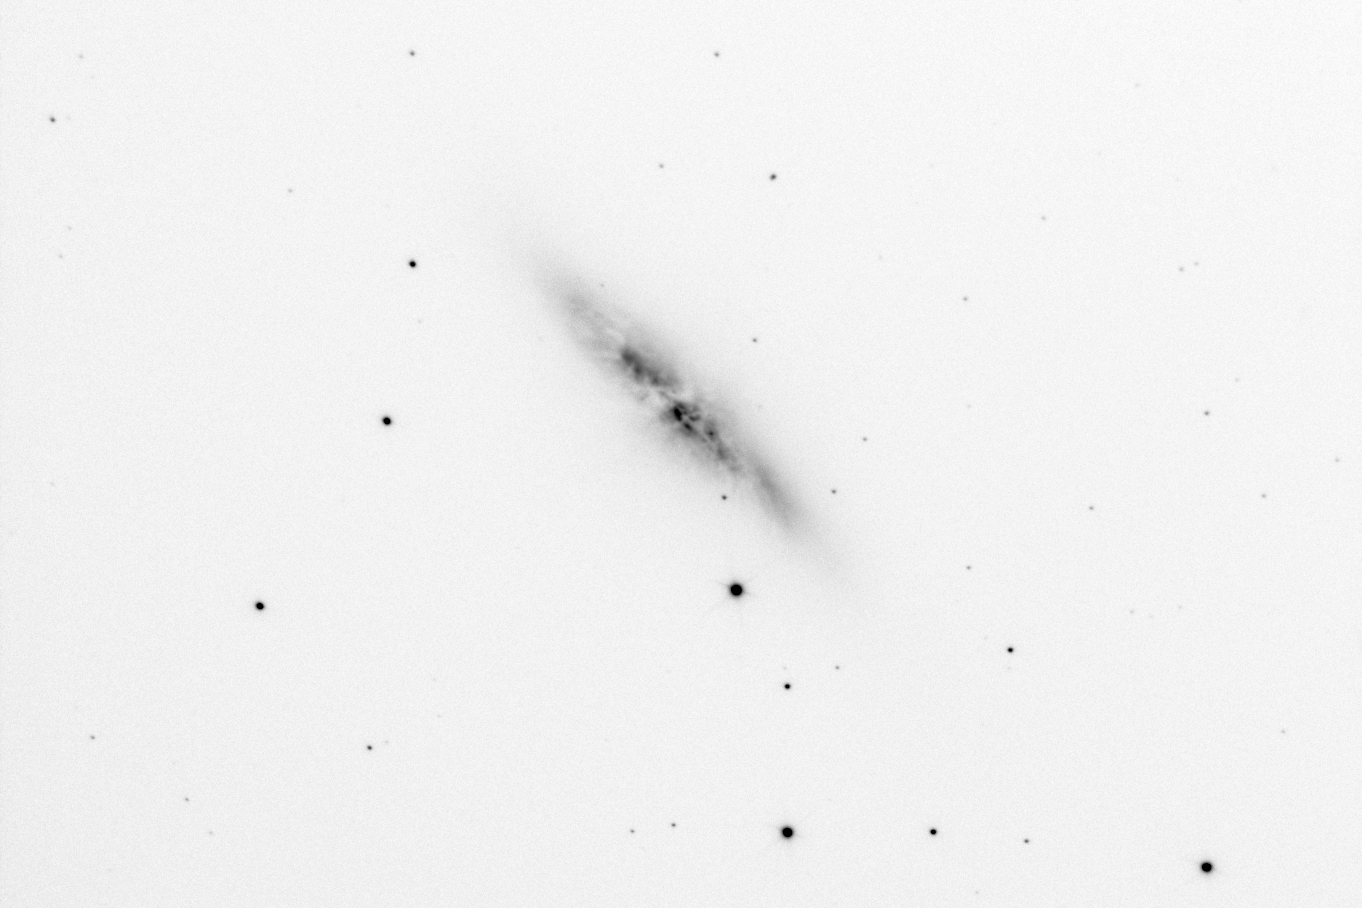 Galaxie irrégulière Messier 82 (négatif)